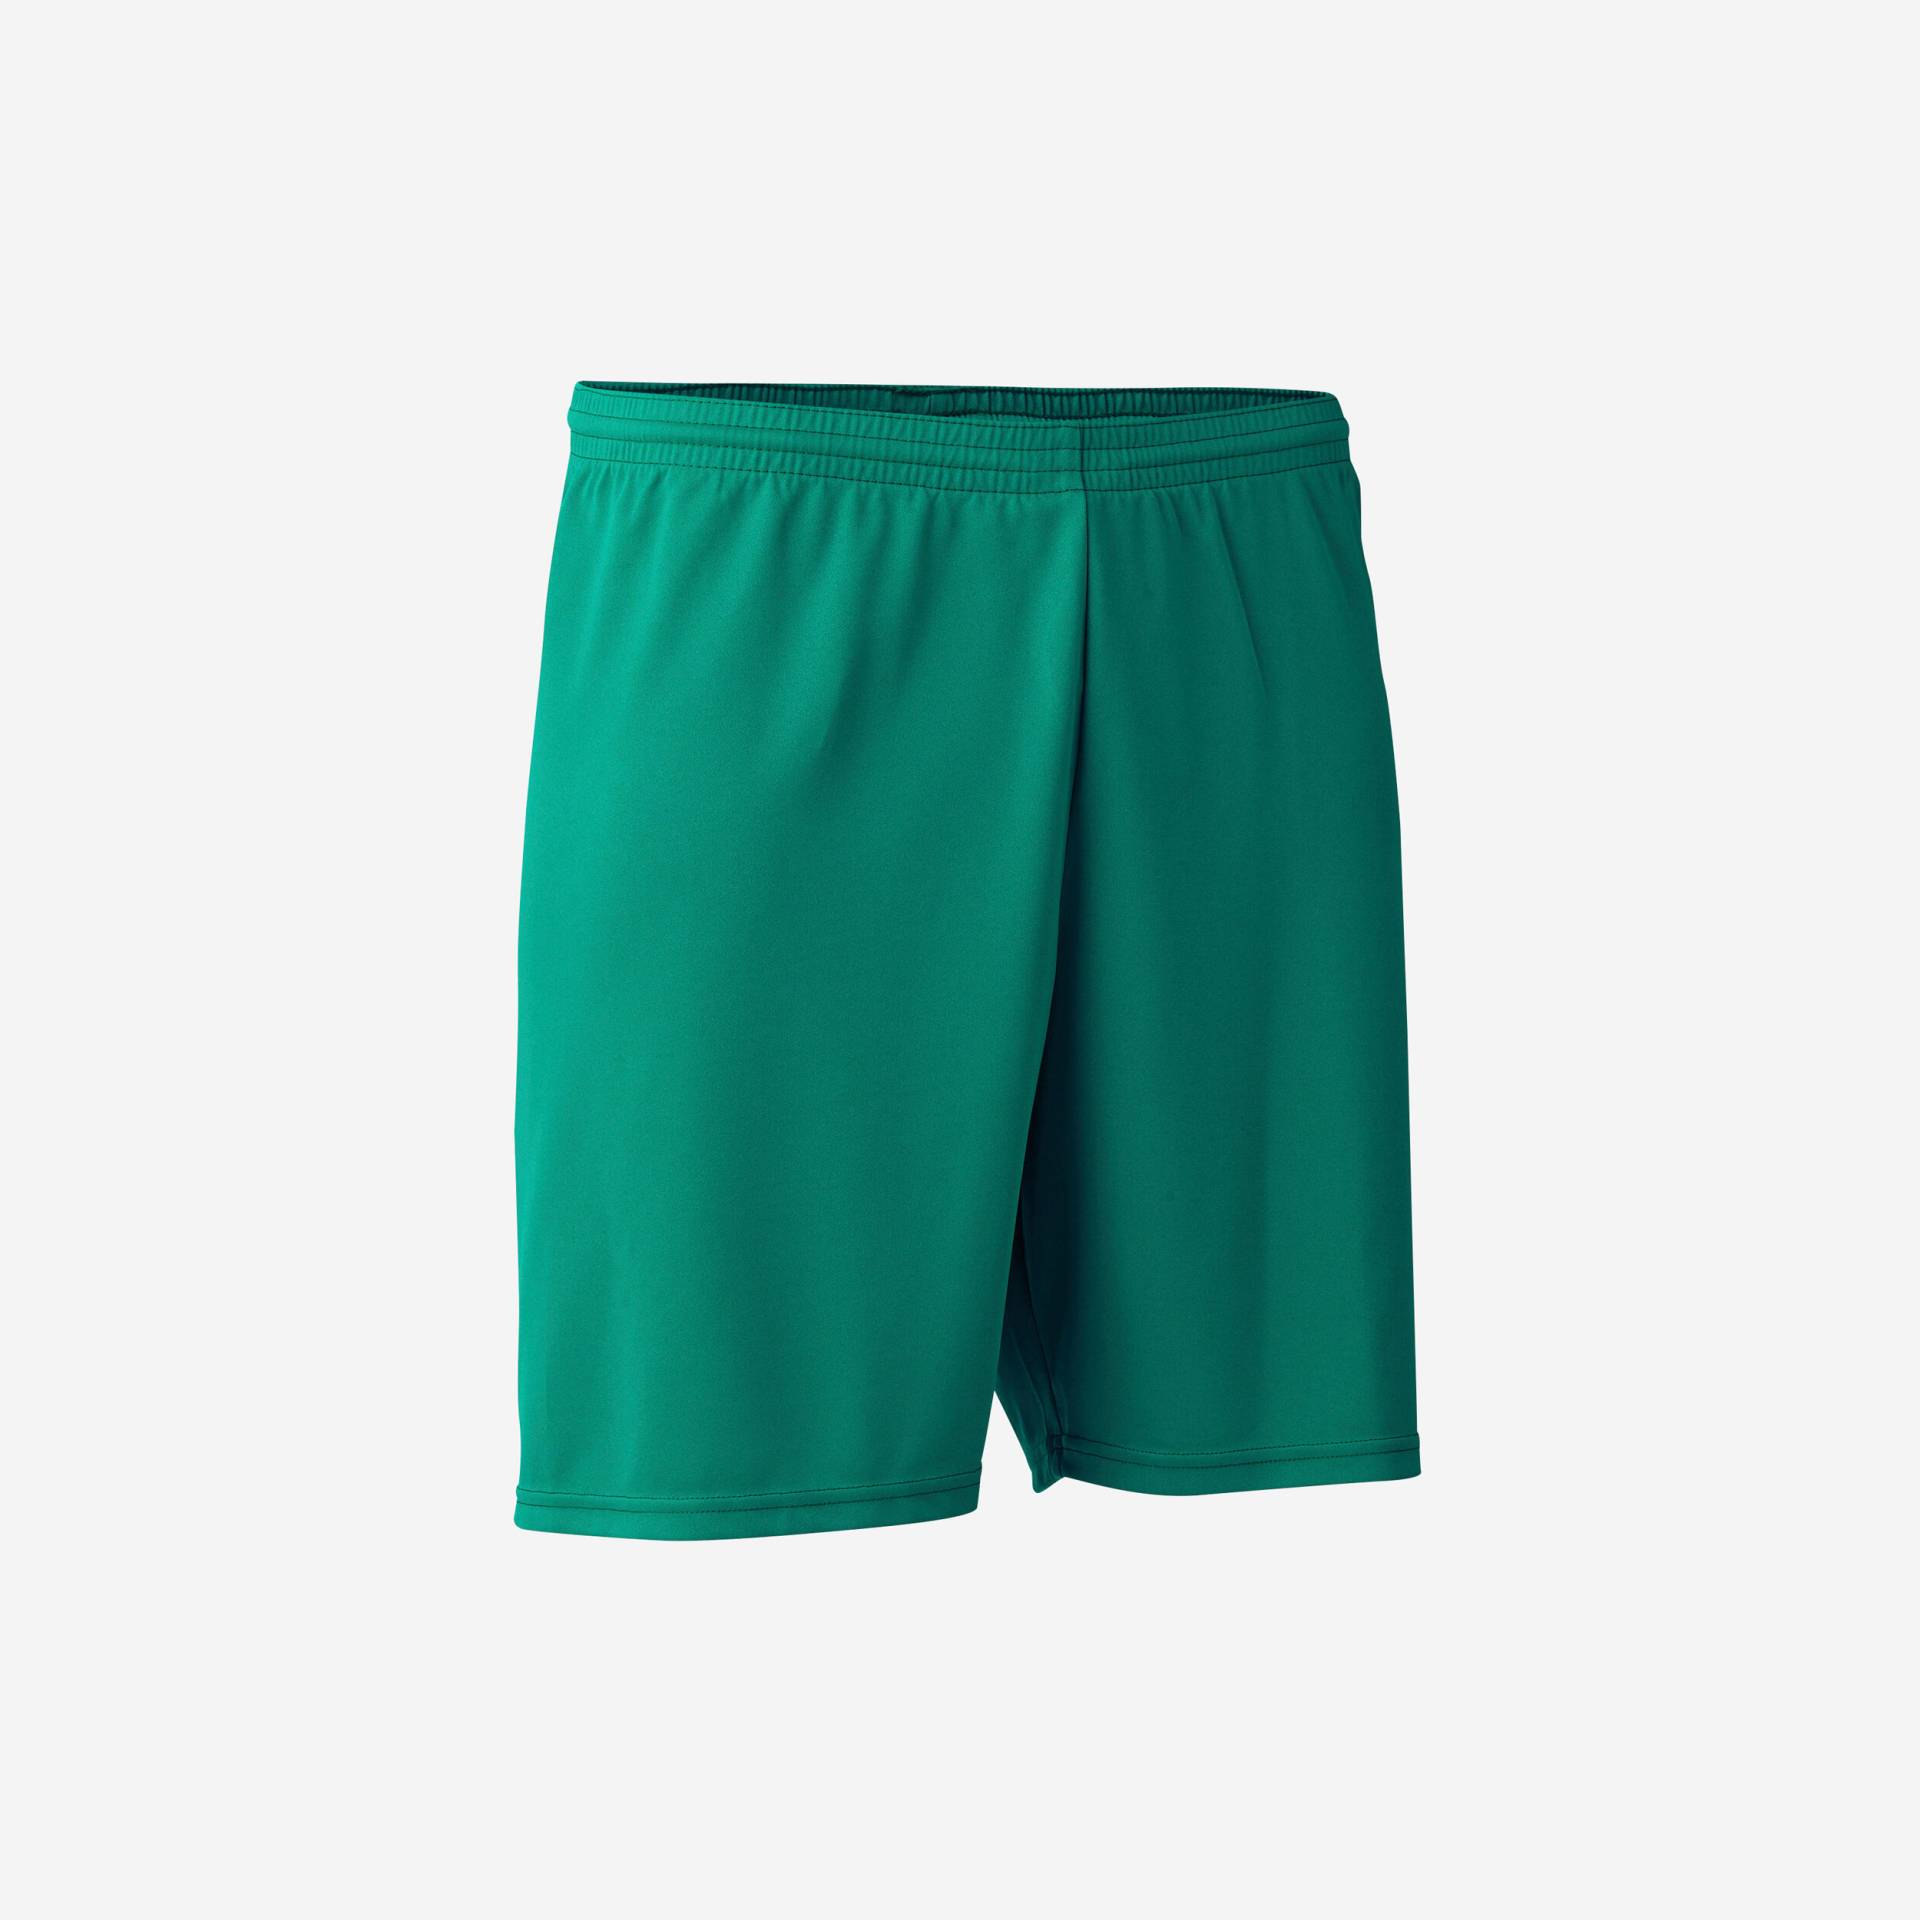 Kinder Fussball Shorts - Essentiel grün von KIPSTA